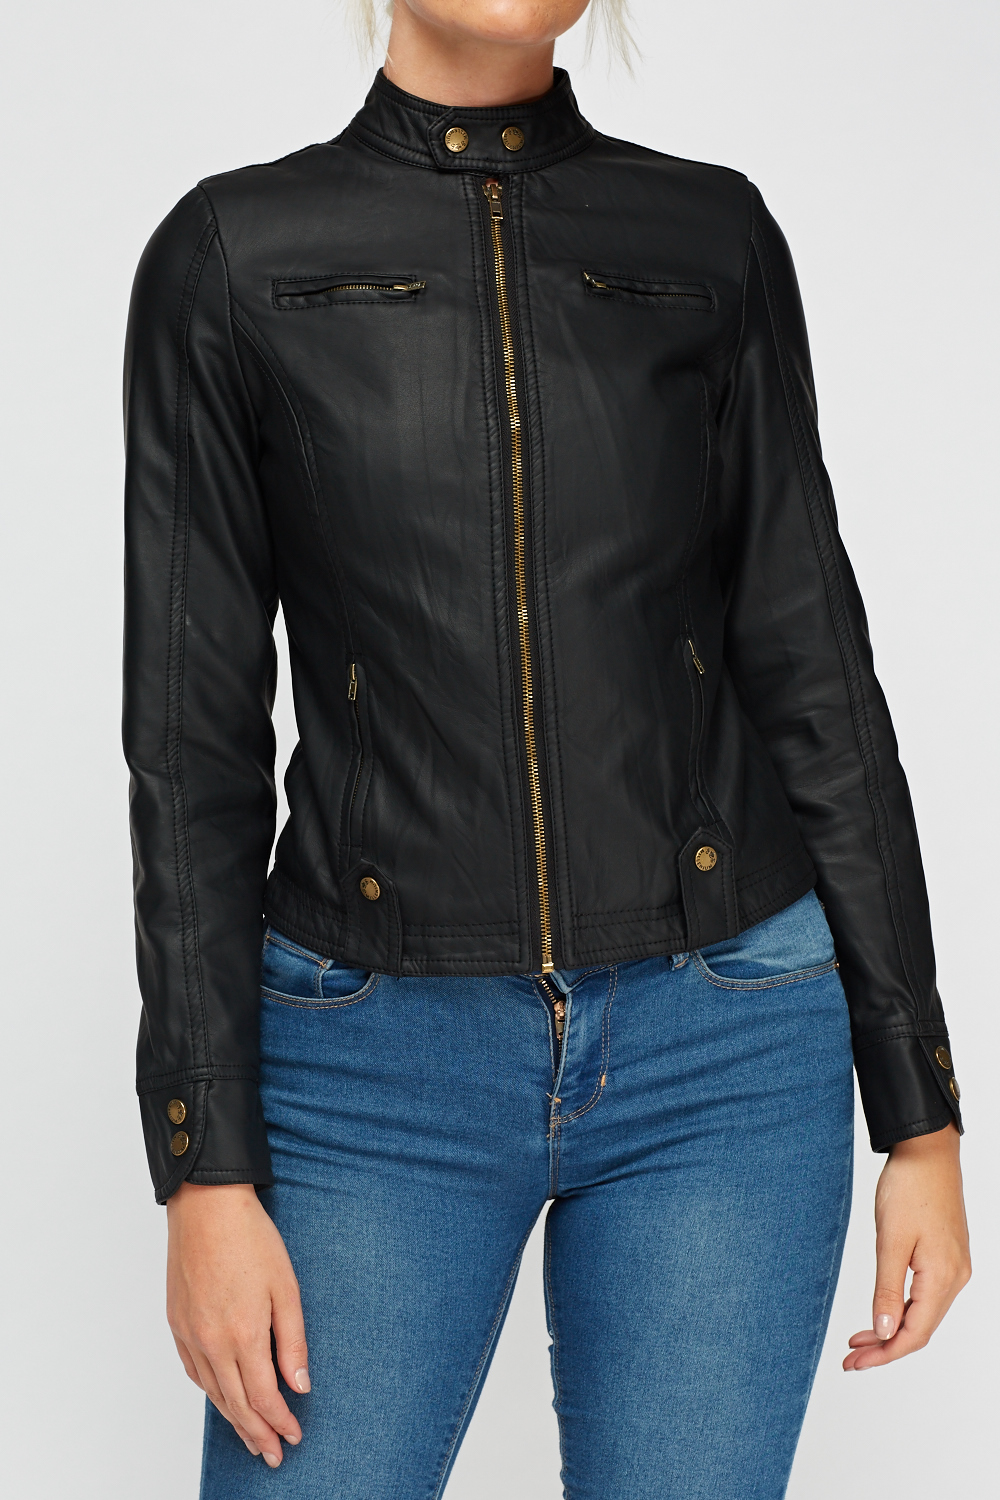 Download V-Code Womens Millenium Biker Jacket Long Sleeve Zip Front ...